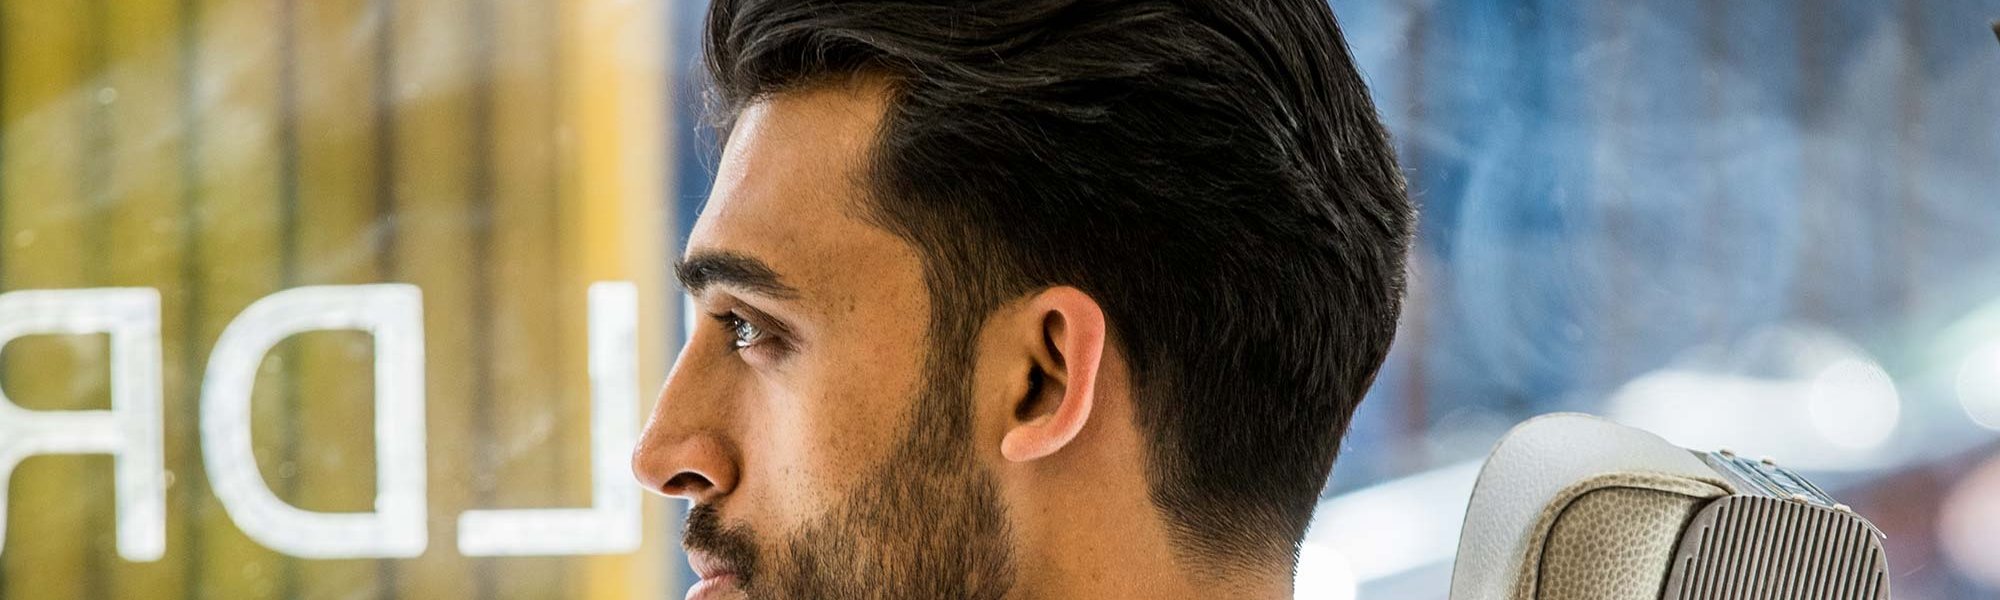 Peinados para hombres según su cara | L'Oréal Paris